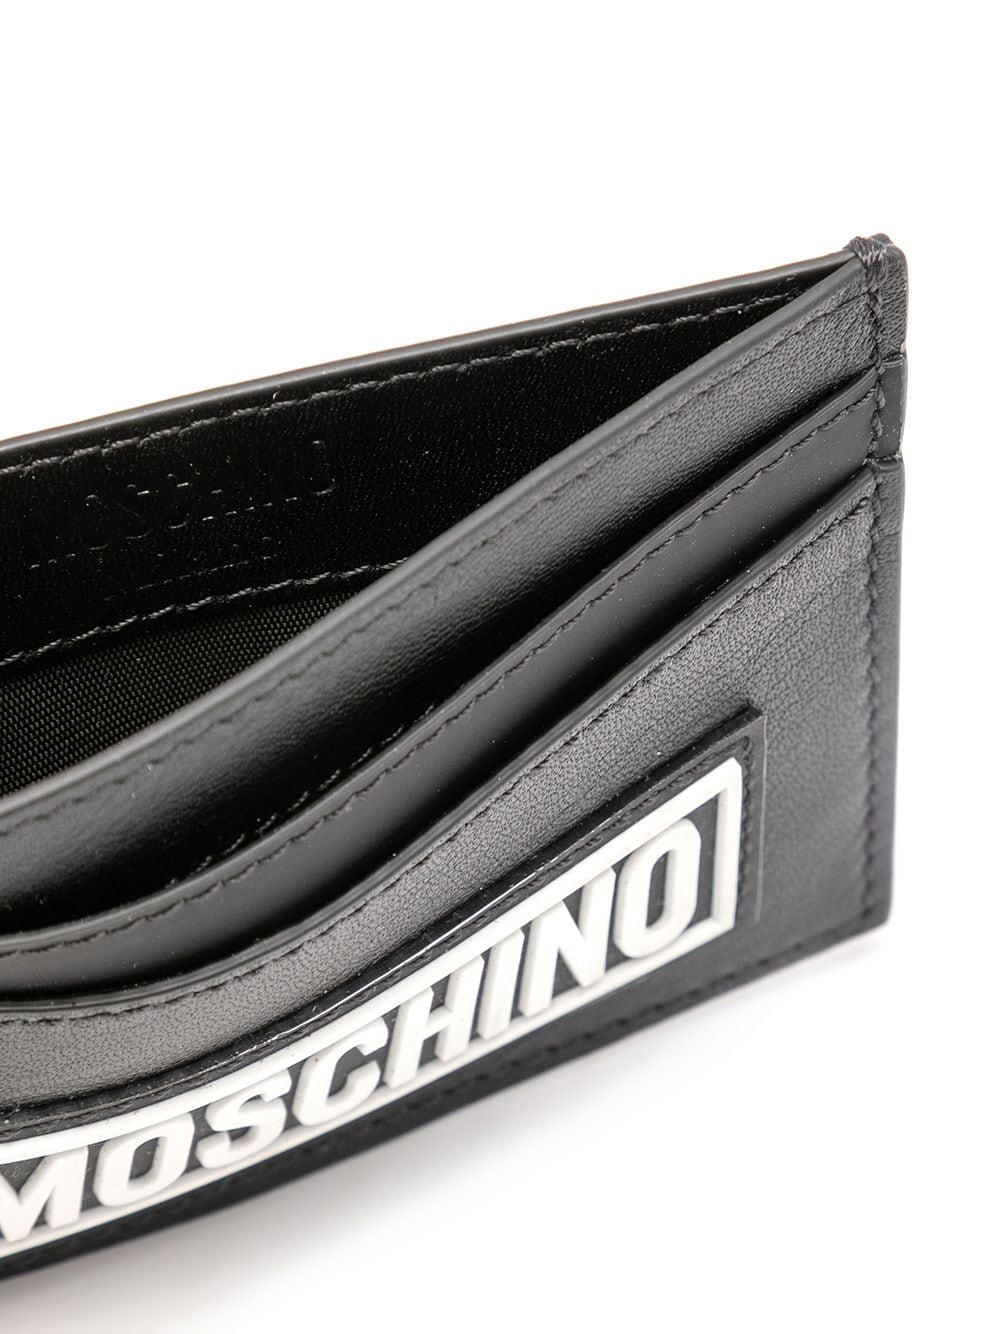 Shop Moschino Logo-print Cardholder In Schwarz